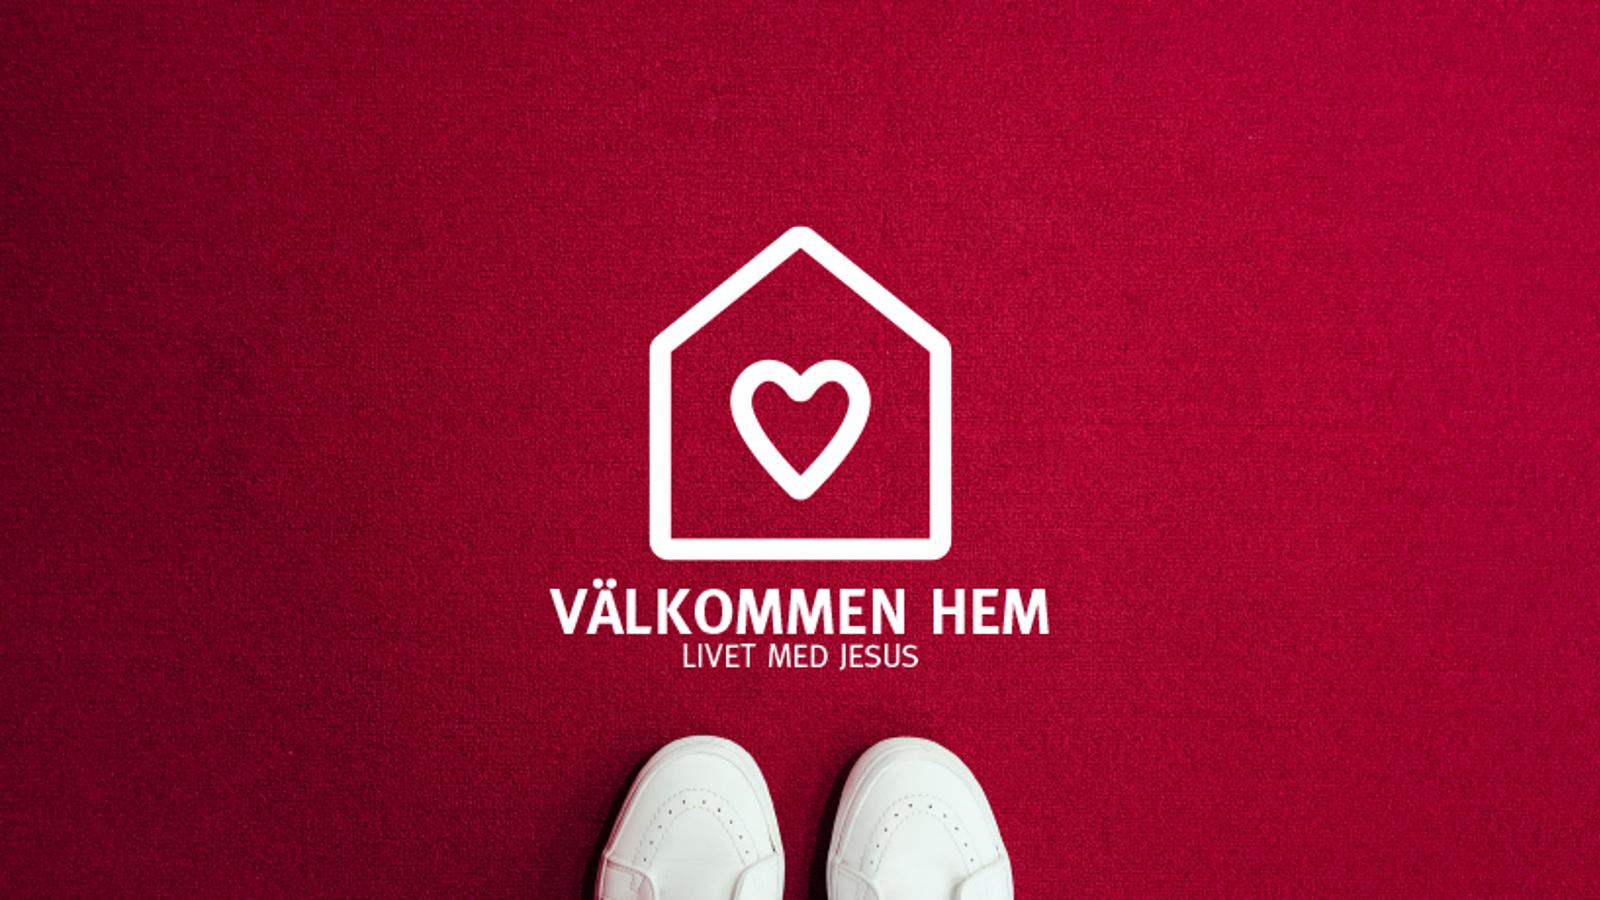 Ett par skor som står på ett rött golv. På golvet är det en logotyp i form av ett hus med ett hjärta på, med texten "Välkommen hem. Livet med Jesus".